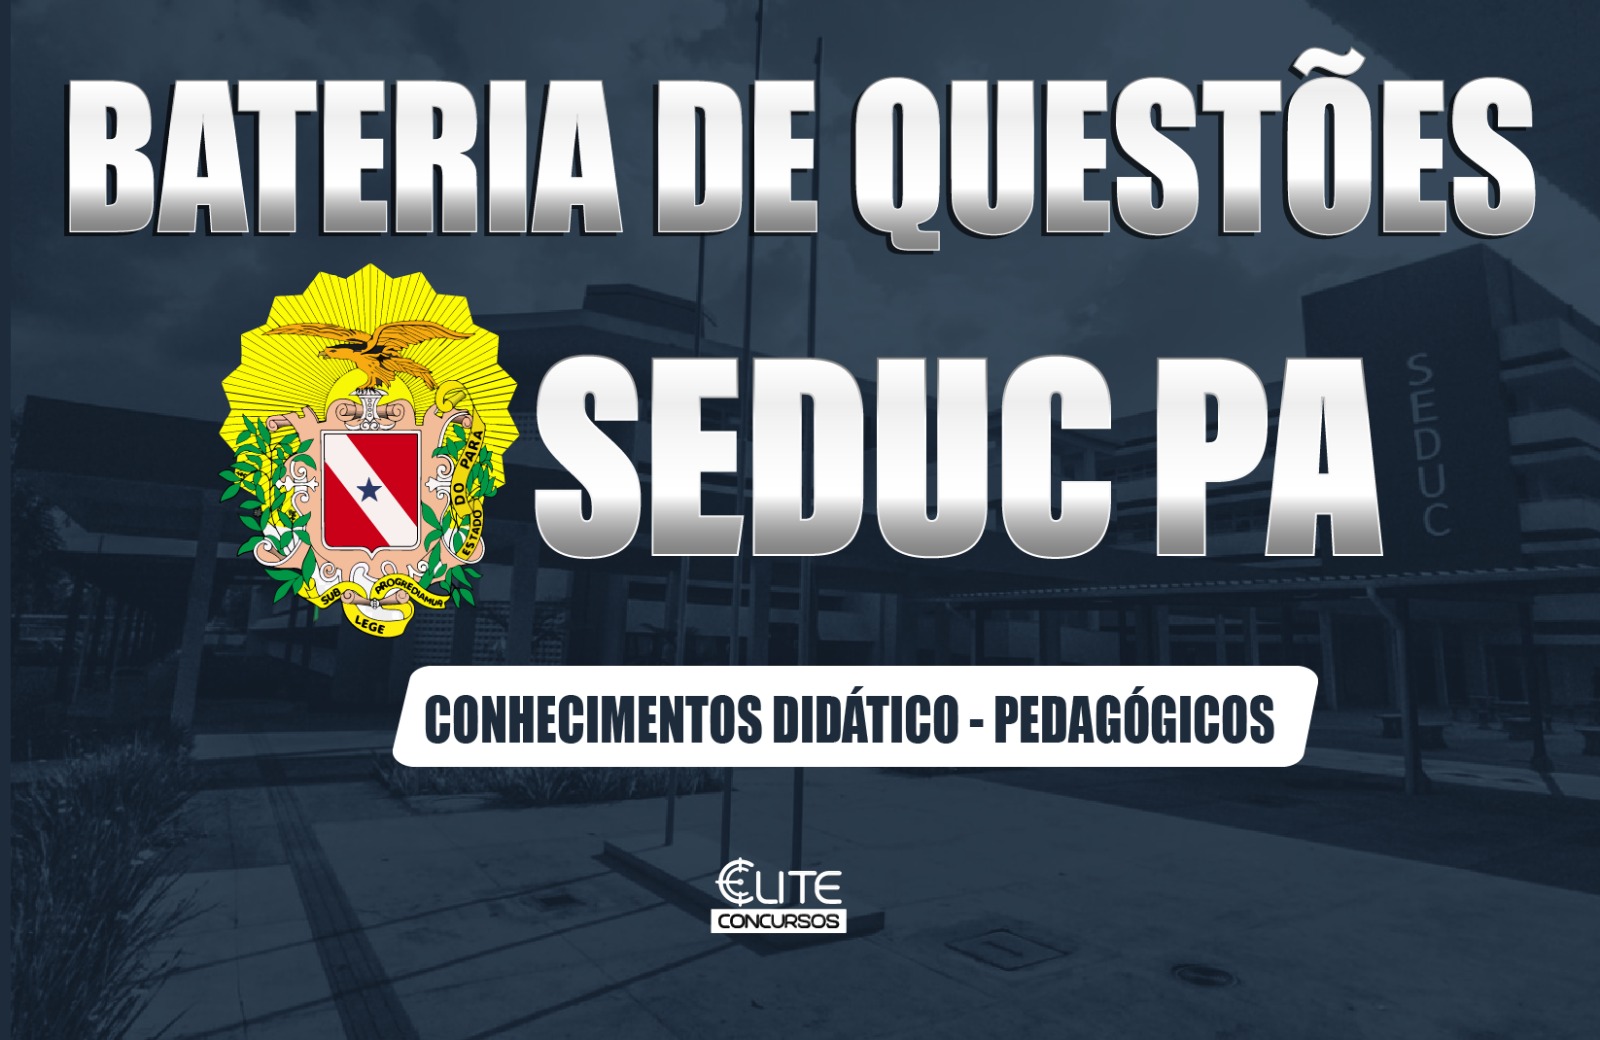 BATERIA DE QUESTES SEDUC/PA